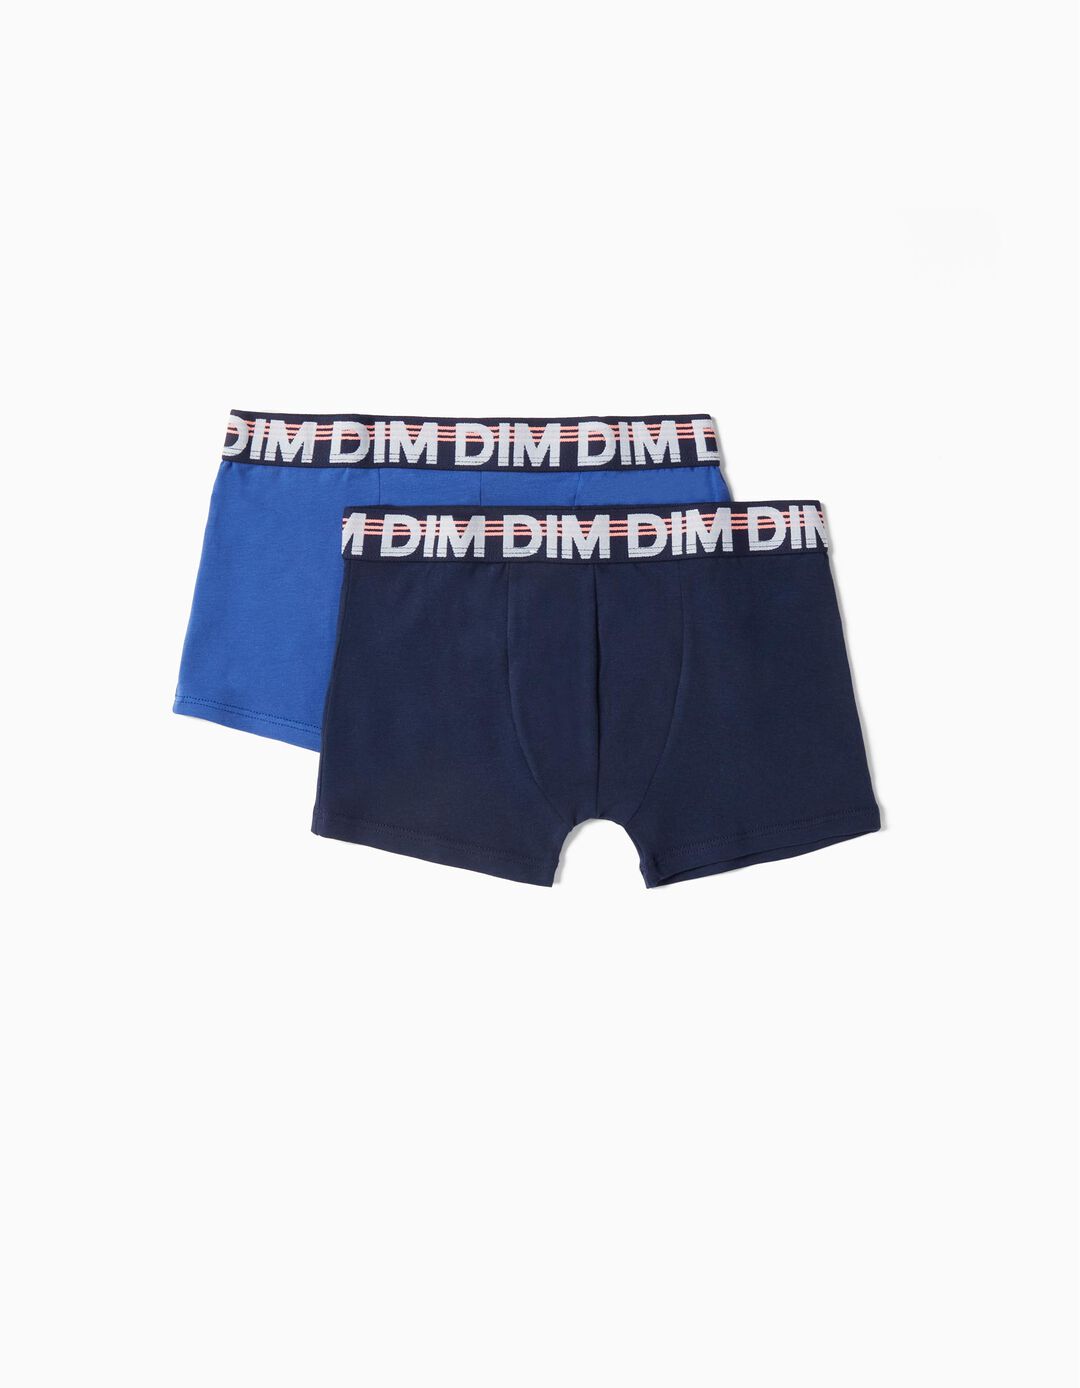 2 'DIM' Boxers Pack, Boys, Multicolour